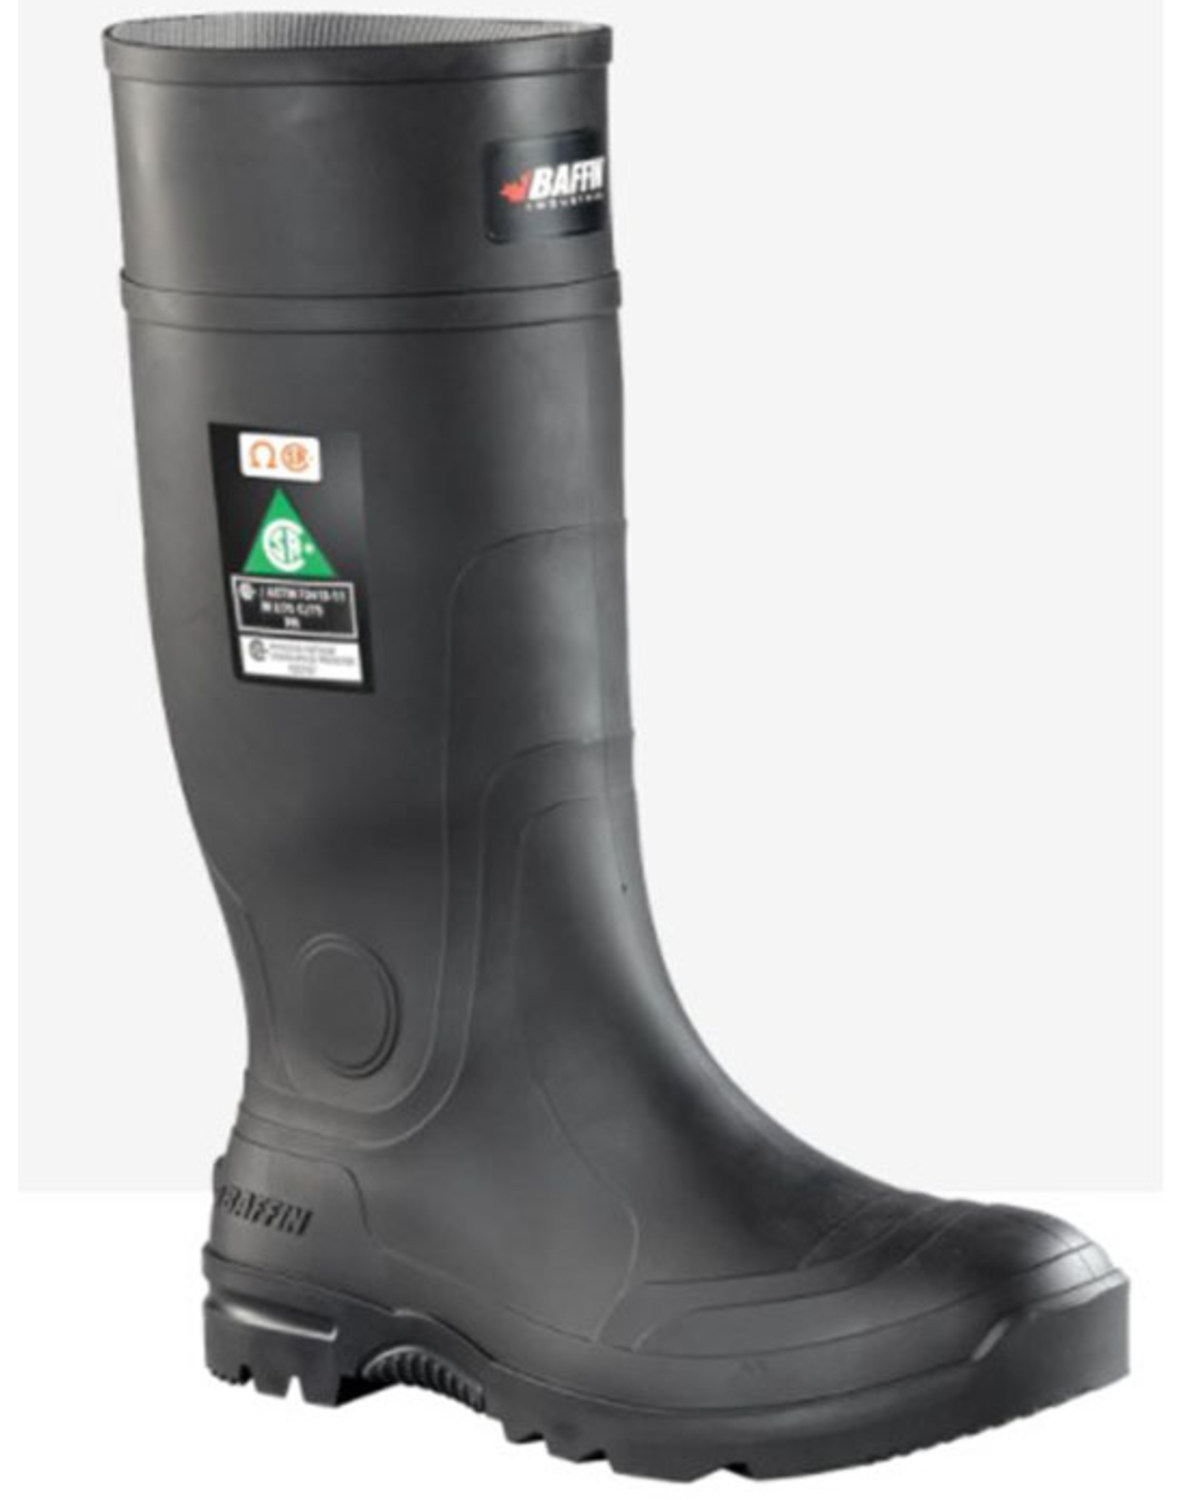 Baffin Men's Blackhawk (STP) Waterproof Rubber Boots - Steel Toe